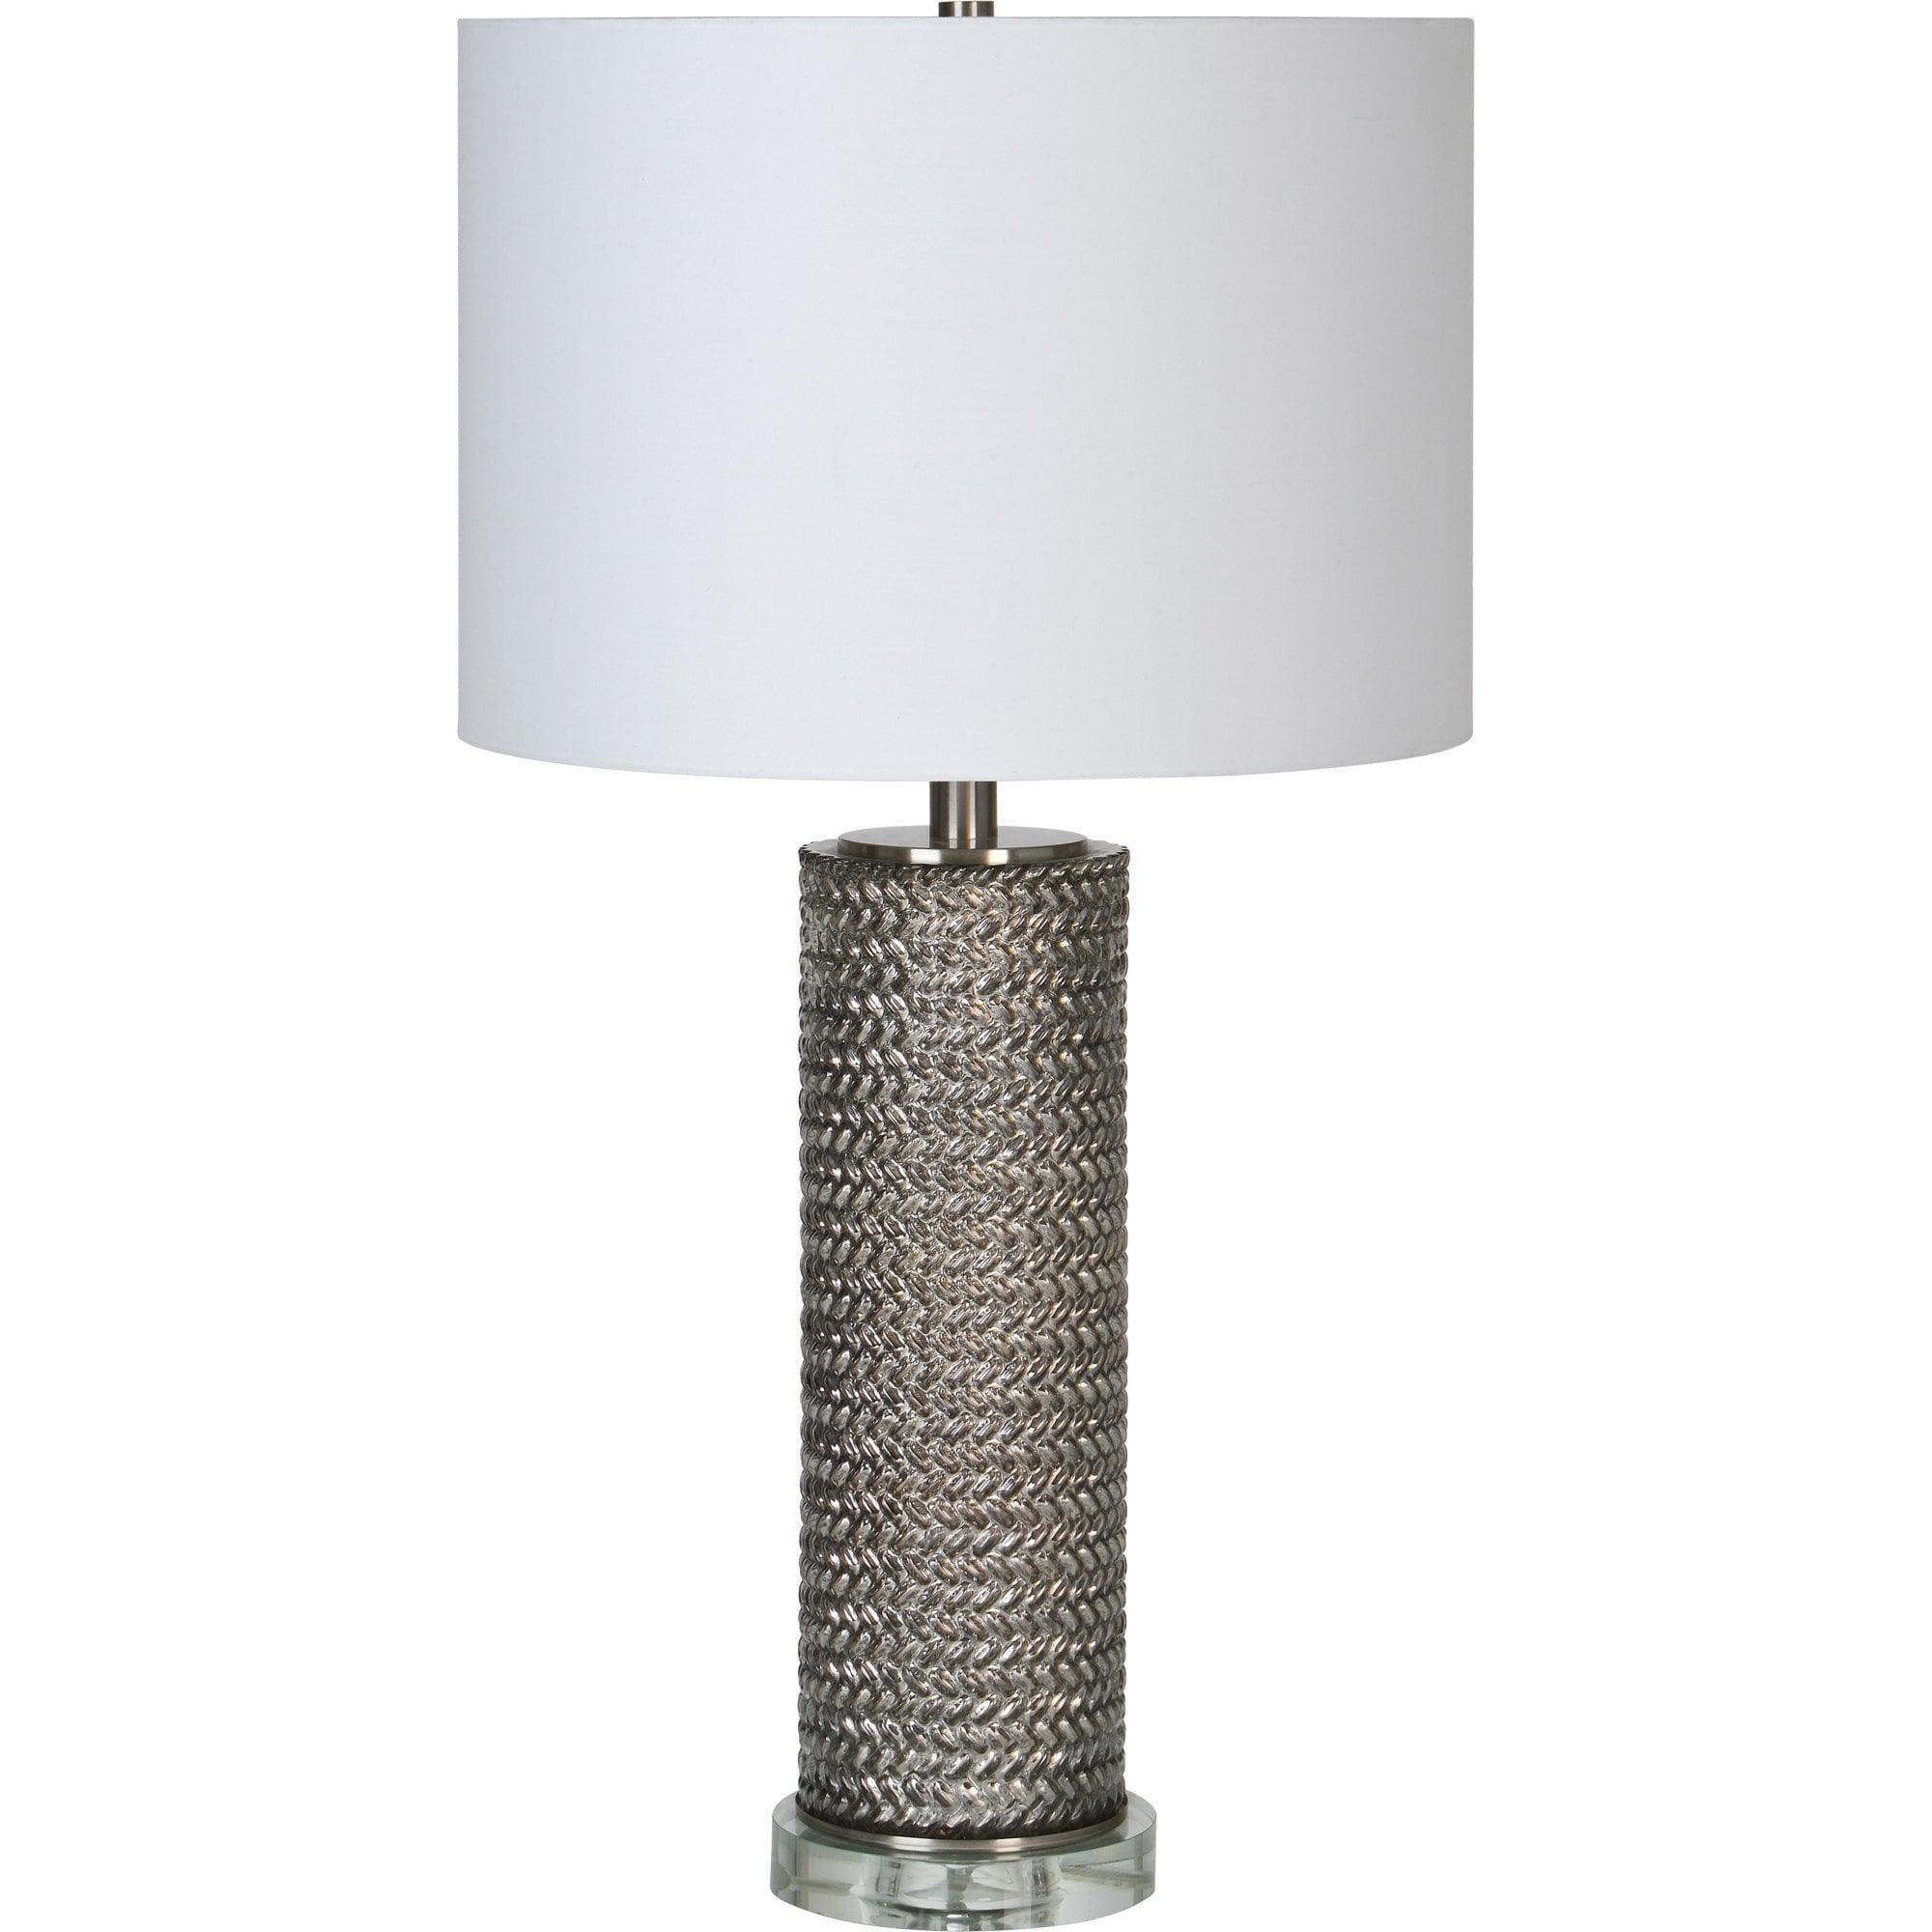 Renwil - Lombardi Table Lamp - LPT1167 | Montreal Lighting & Hardware